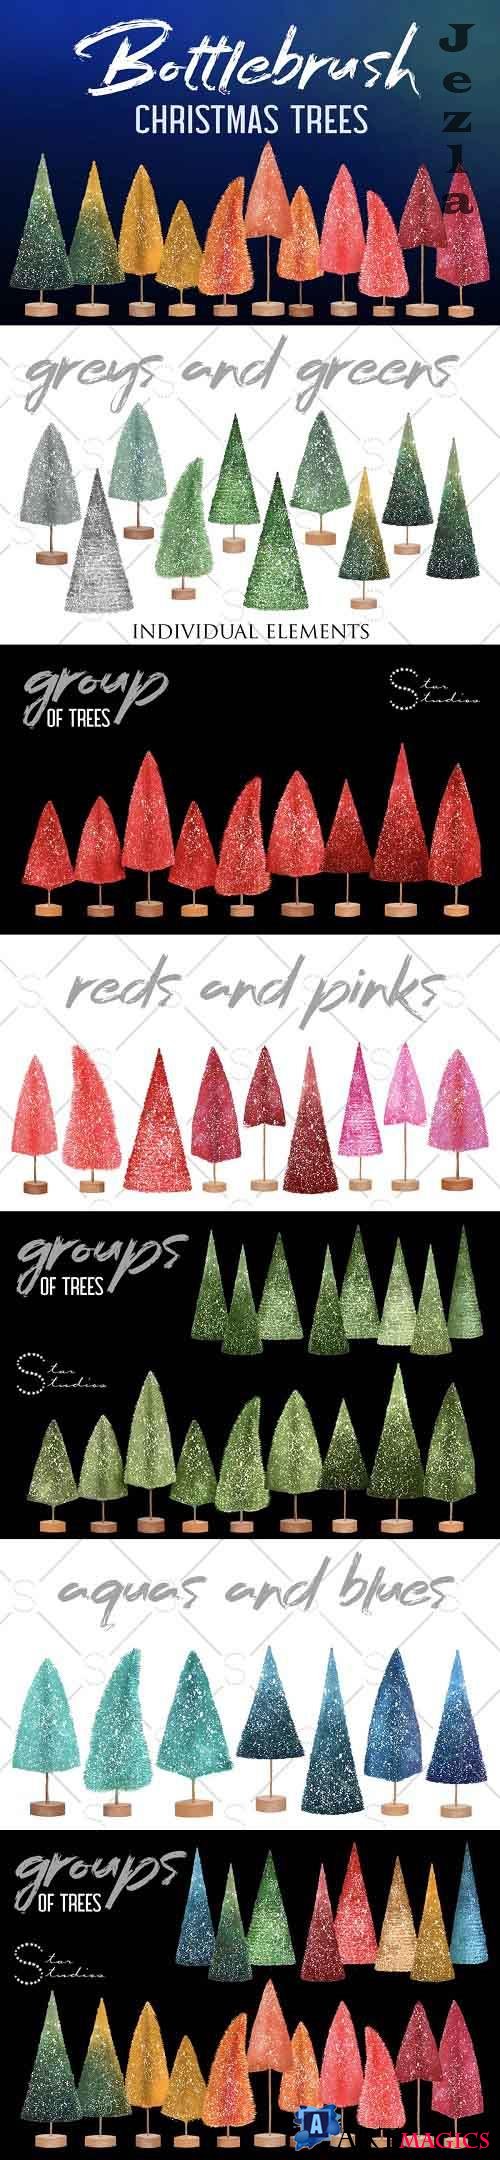 Bottlebrush Christmas Trees - 3186250